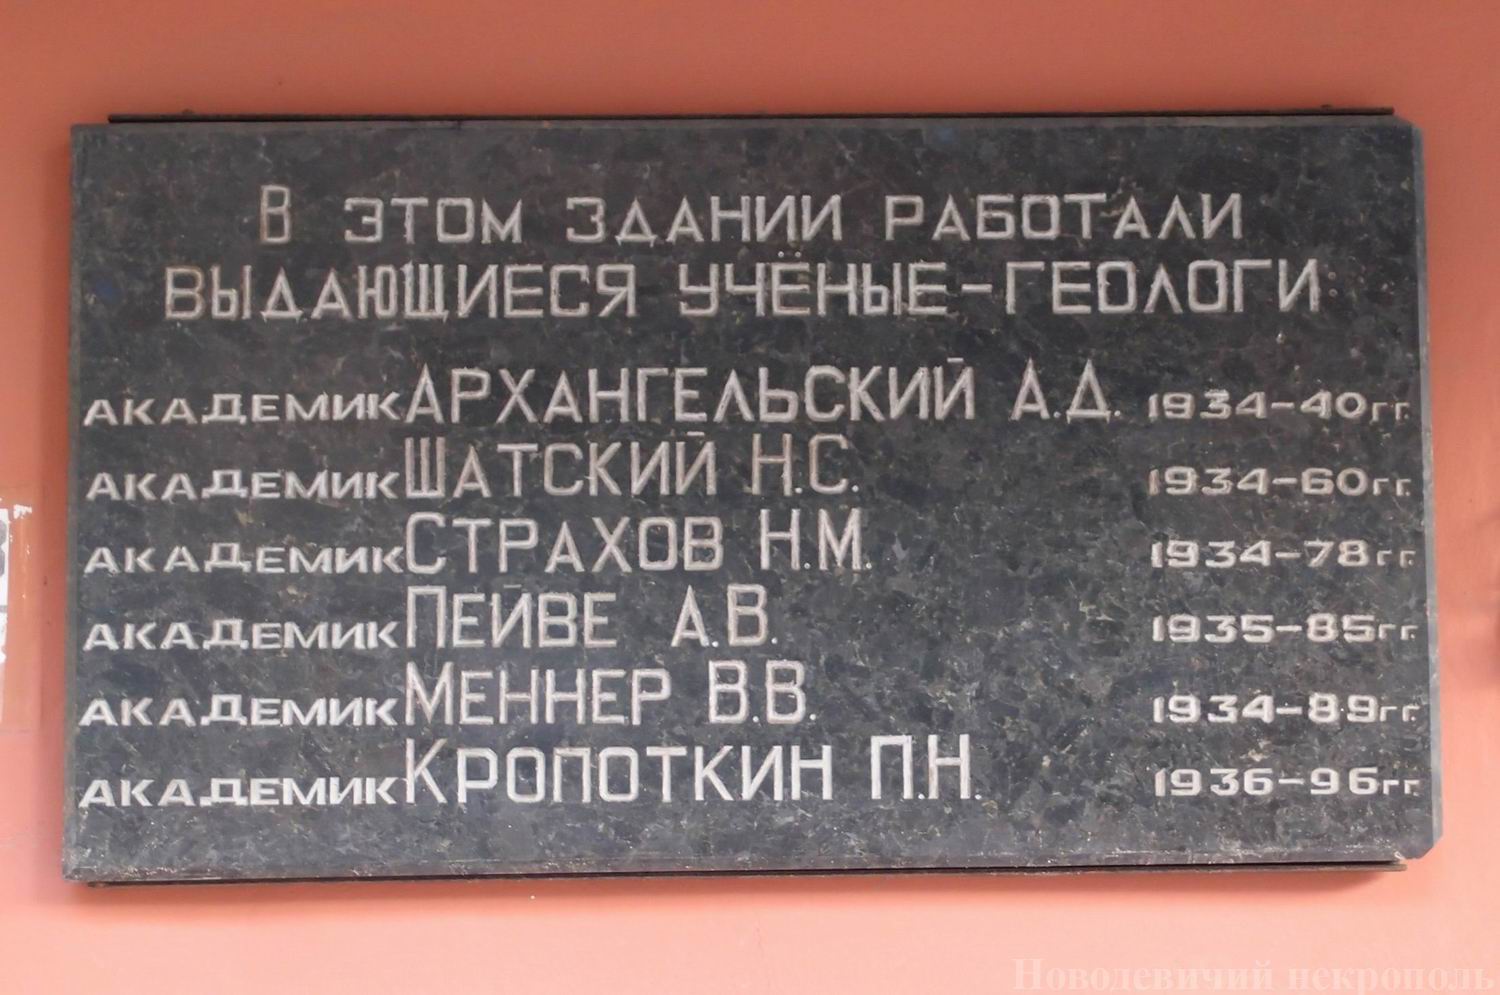 Мемориальная доска на Геологическом институте АН, в Пыжевском переулке, дом 7, открыта в 1999.